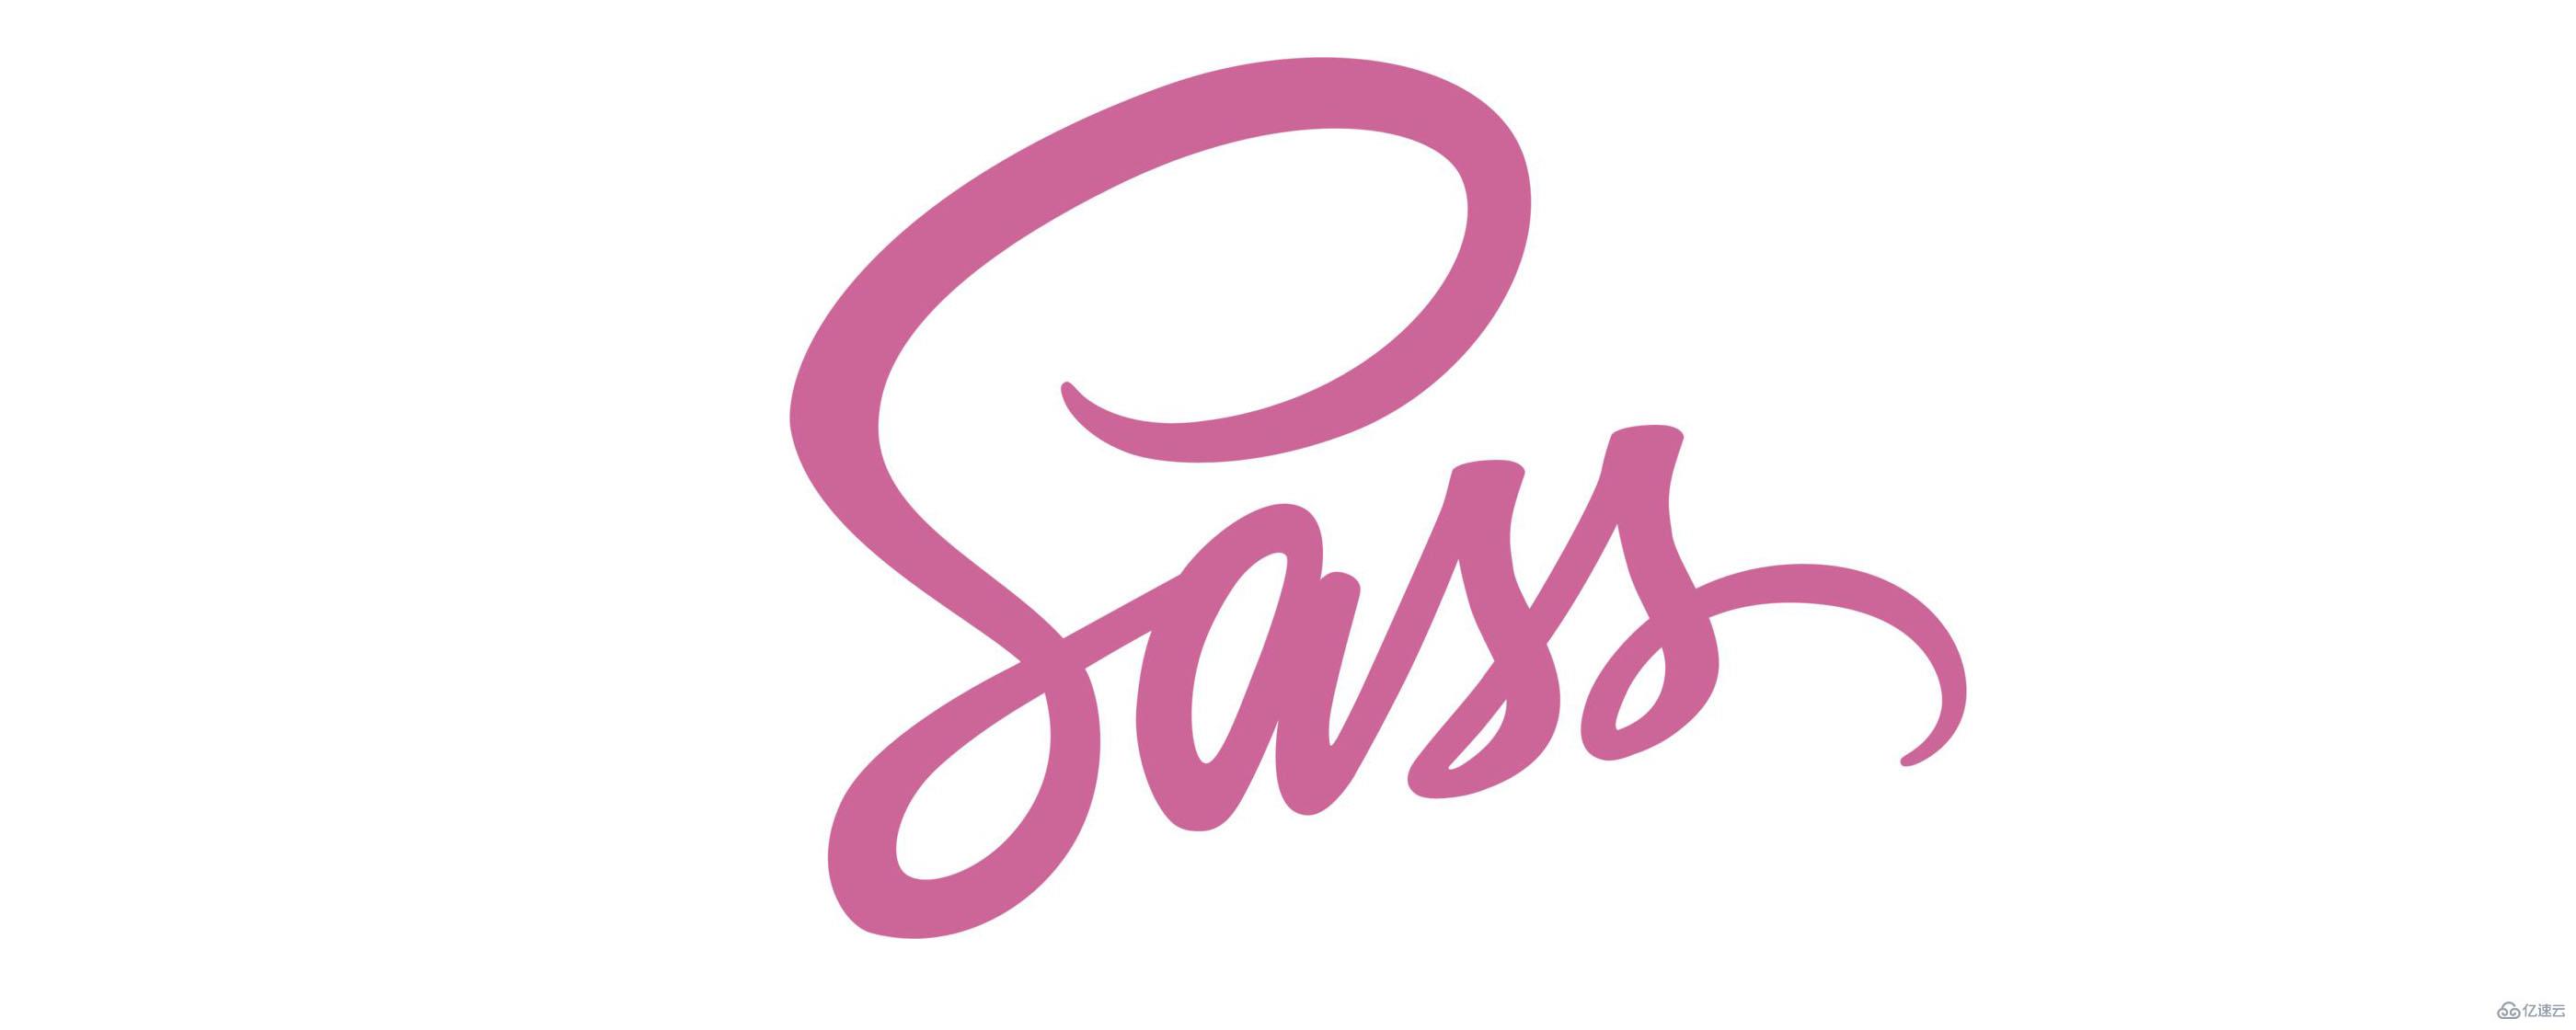 使用Sass的方法是什么